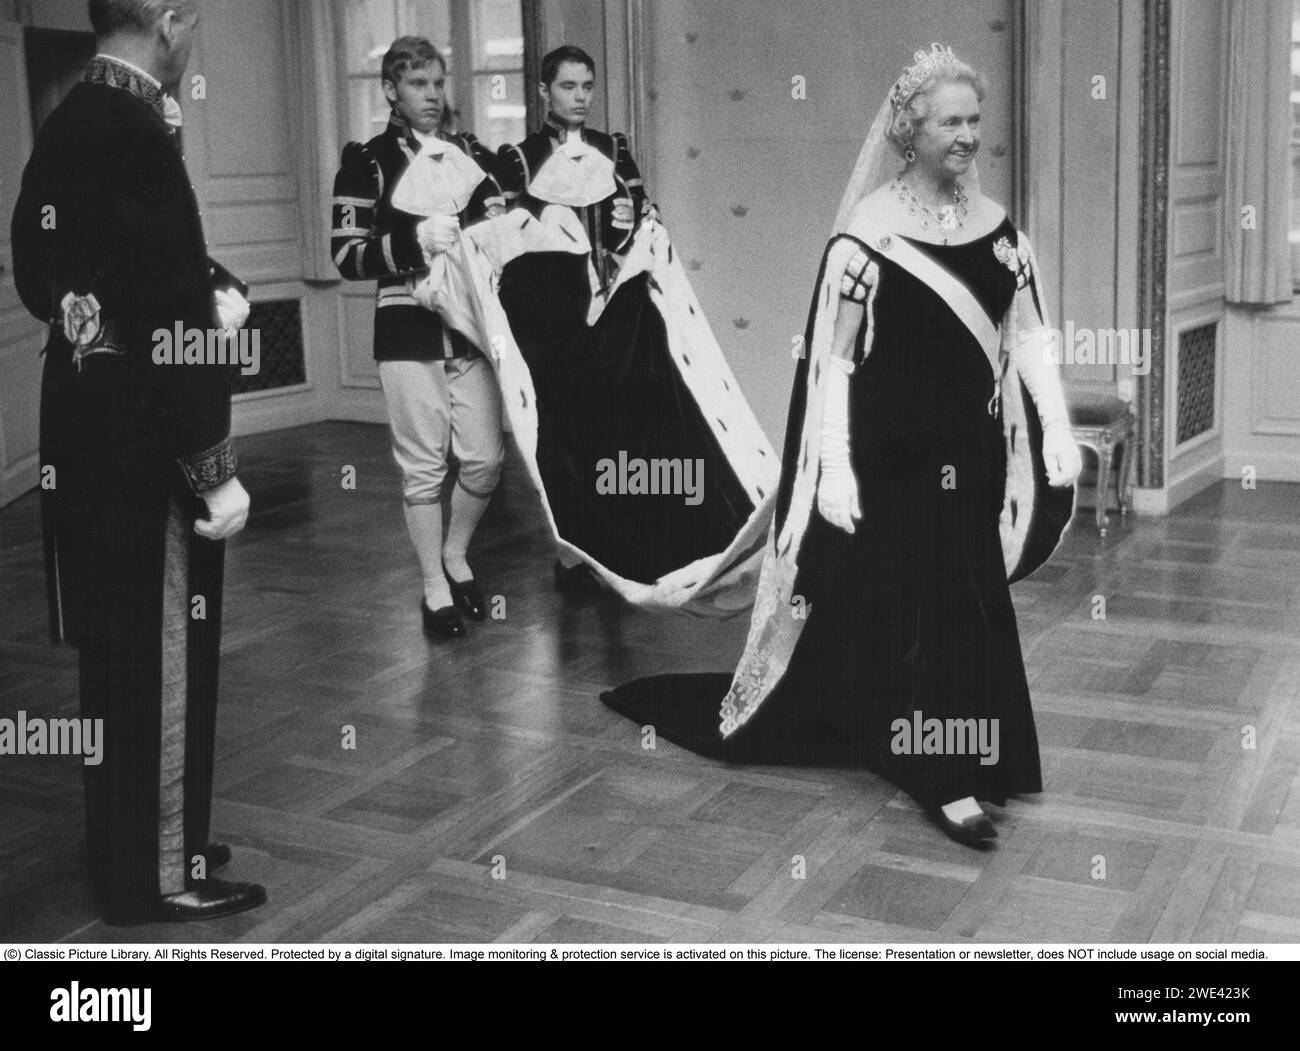 Principessa Sibilla di Sassonia-Coburgo e Gotha. 18 gennaio 1908 - 28 novembre 1972. Era un membro della famiglia reale svedese e la madre dell'attuale re di Svezia, Carlo XVI Gustavo. Divenne una principessa svedese quando sposò il principe Gustavo Adolfo, duca di Västerbotten nel 1932. Ebbe così la prospettiva di un giorno diventare regina, ma il principe fu ucciso in un incidente aereo nel 1947 e non visse per salire al trono svedese. Suo figlio divenne re l'anno dopo la sua morte. Nella foto il 13 gennaio 1972 all'apertura del parlamento svedese, indossando un lungo abito con due lacchè di corte lif Foto Stock